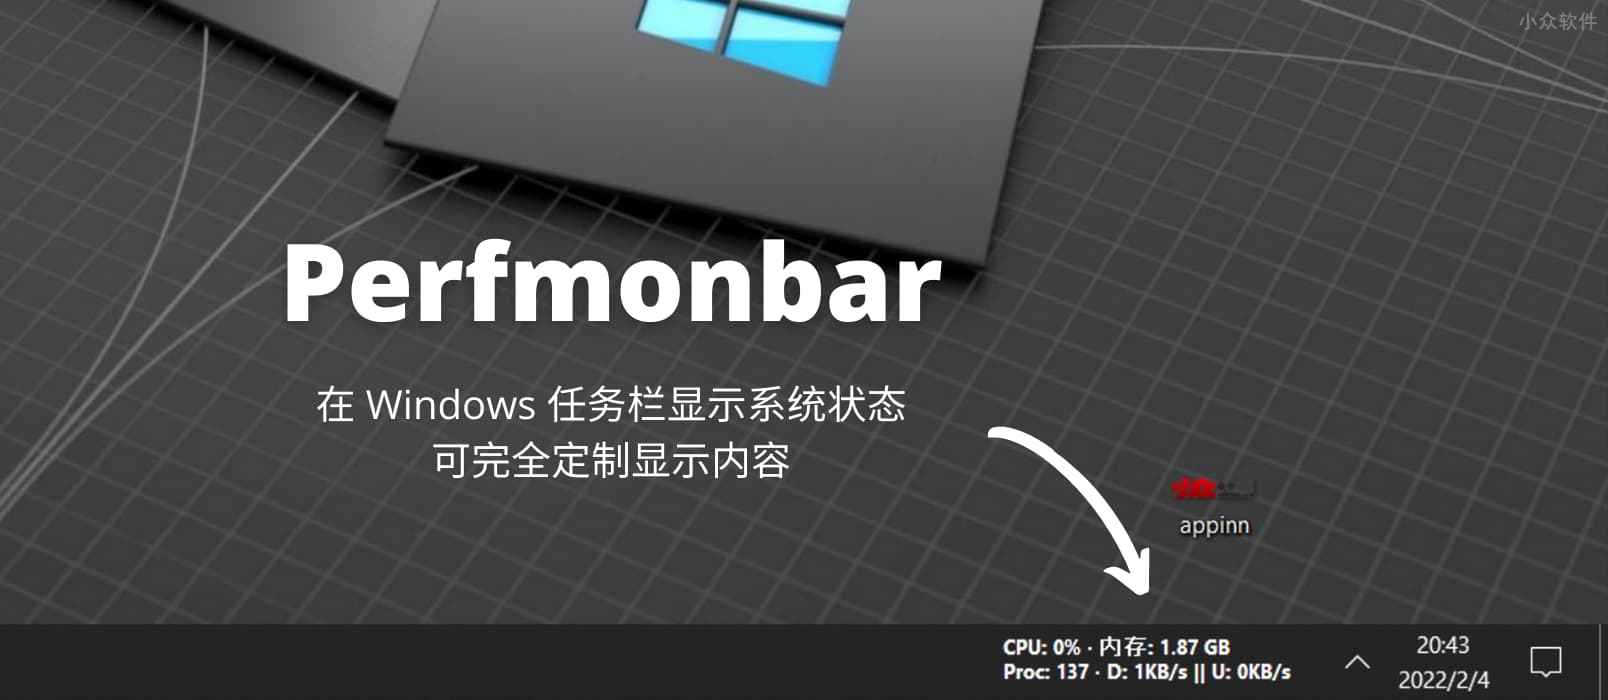 Perfmonbar – 在 Windows 任务栏显示系统状态，可完全定制显示内容